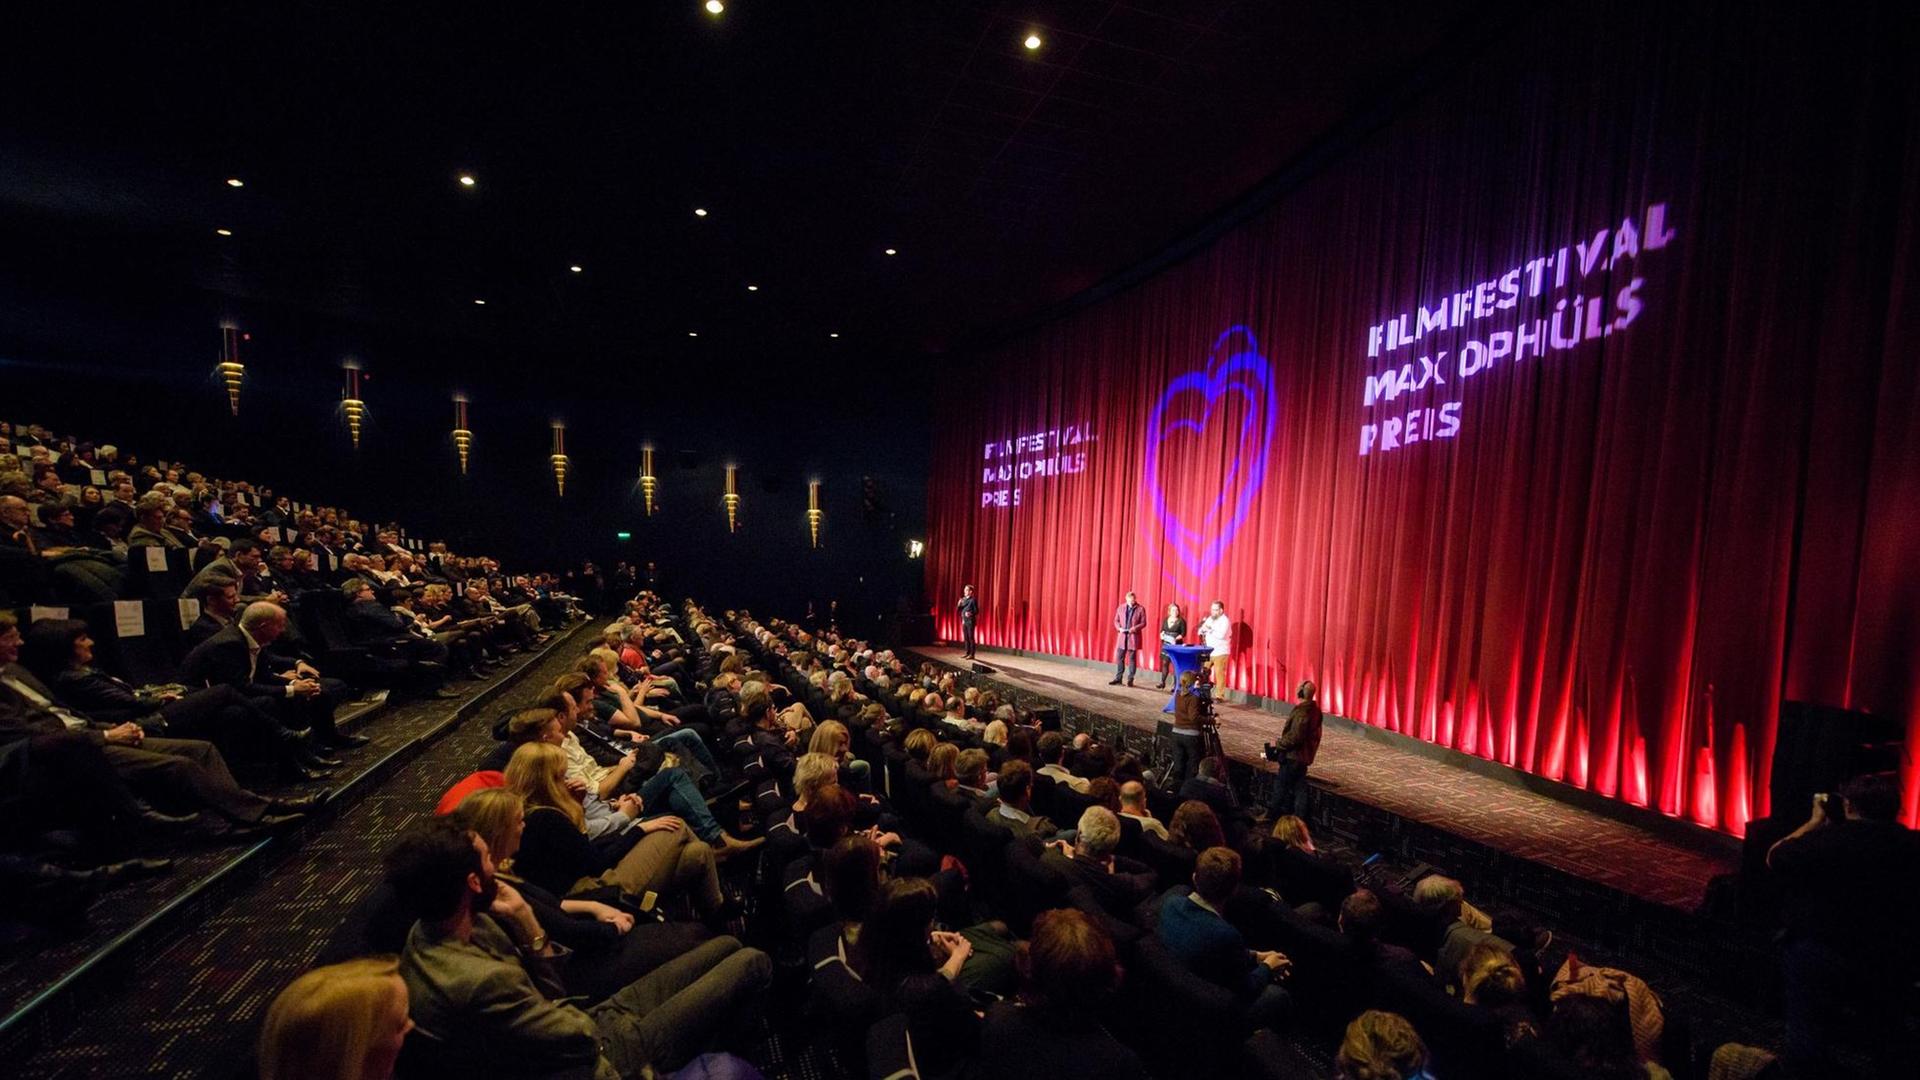 Das 39. Filmfestival Max Ophüls Preis wird am 22.01.2018 im Cinestar Kino in Saarbrücken (Saarland) eröffnet.